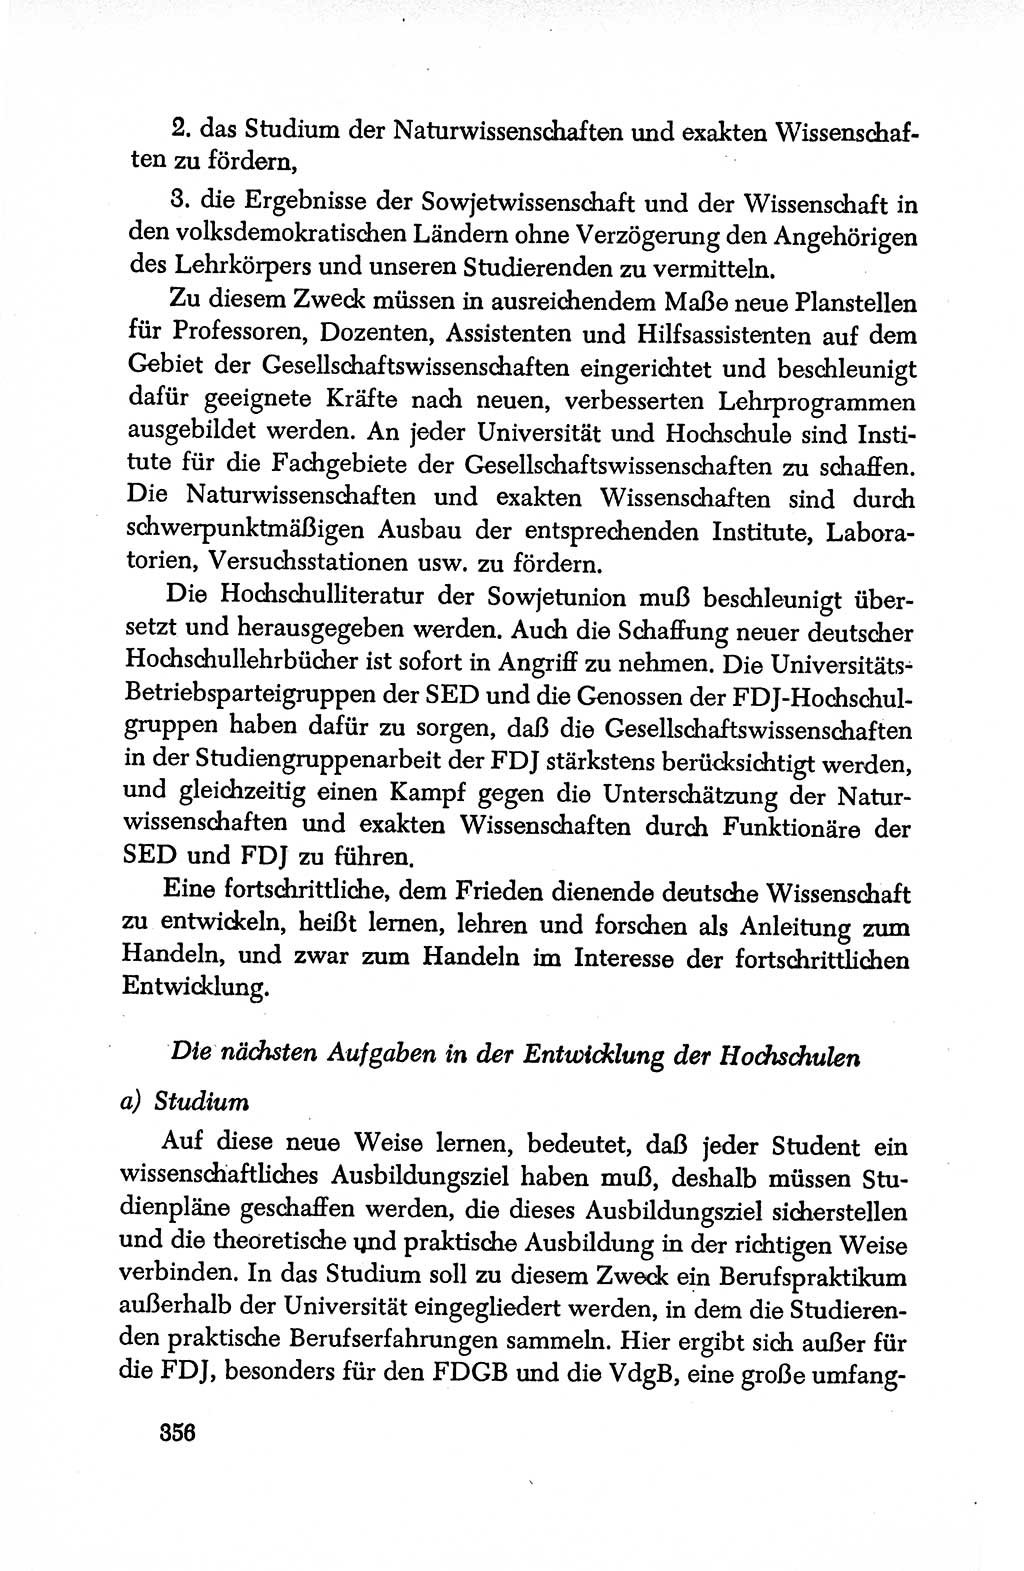 Dokumente der Sozialistischen Einheitspartei Deutschlands (SED) [Deutsche Demokratische Republik (DDR)] 1950-1952, Seite 356 (Dok. SED DDR 1950-1952, S. 356)